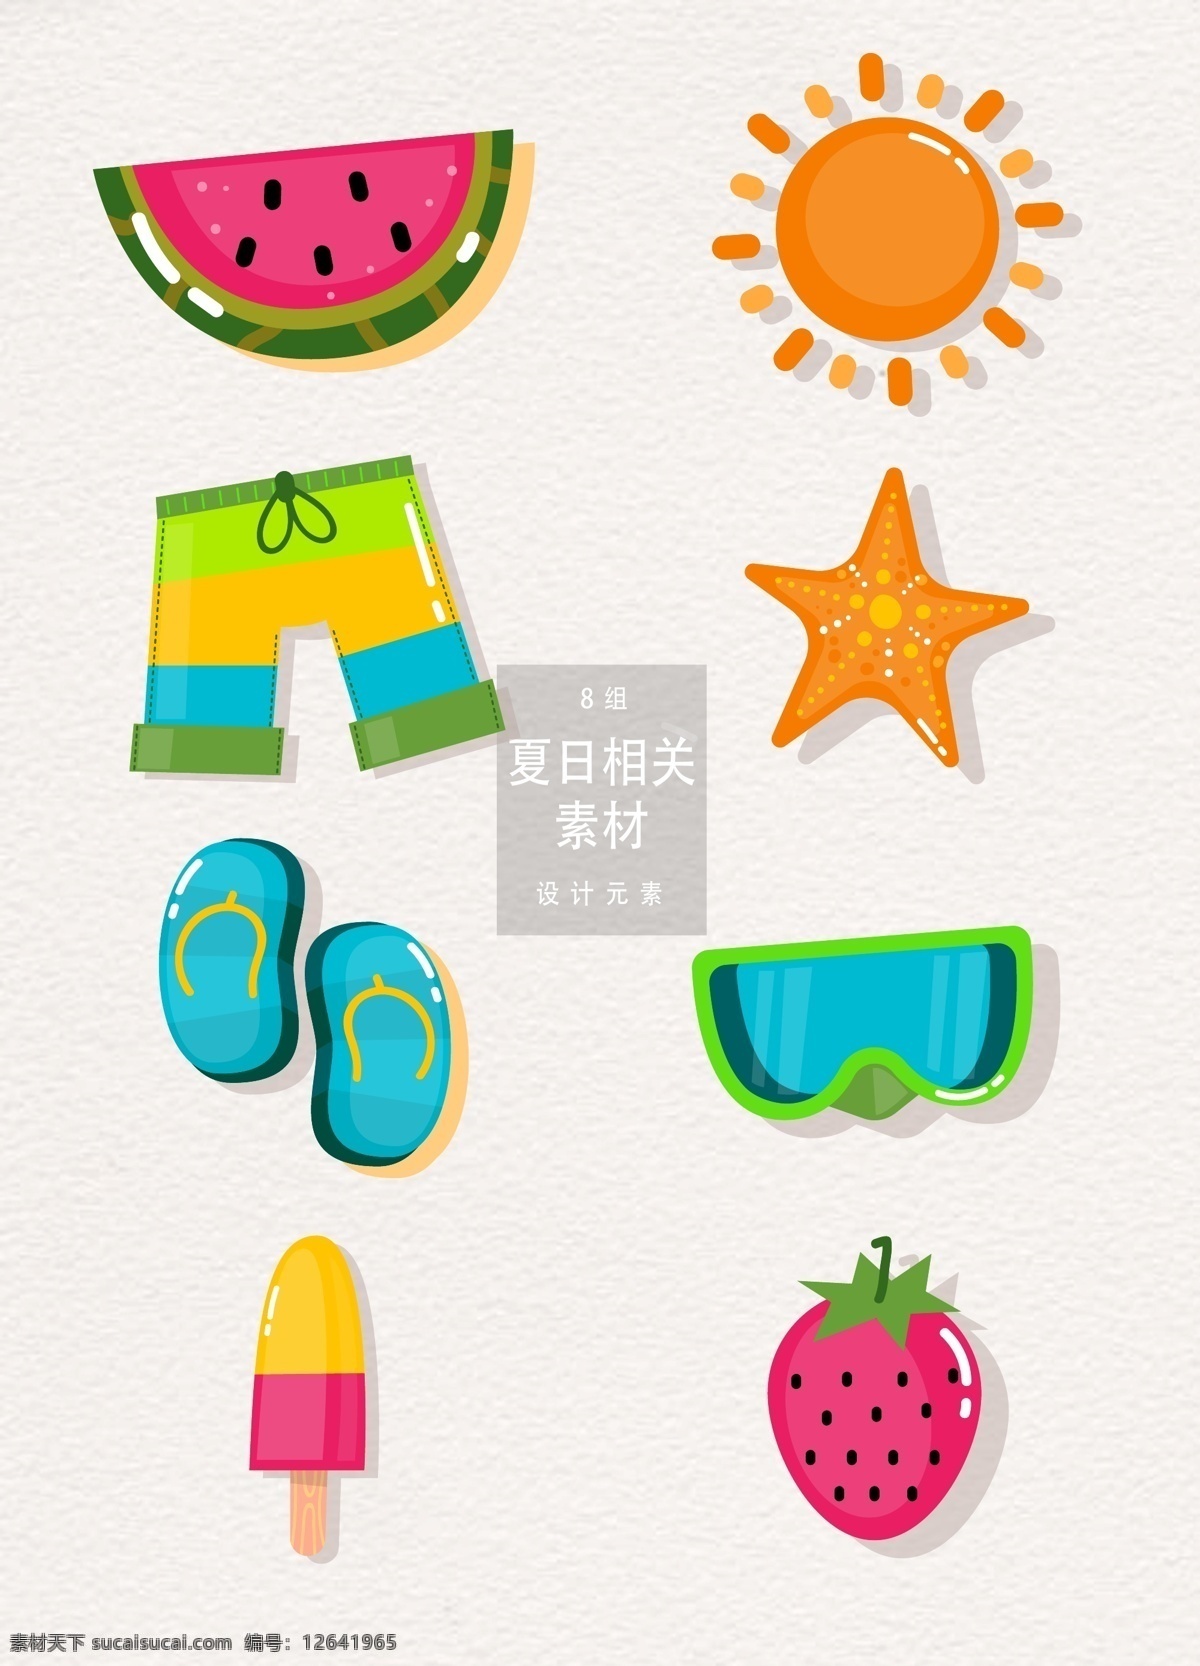 夏日 相关 矢量 夏季 海边 太阳 草莓 夏天 立夏 元素 手绘 水彩 西瓜 海星 拖鞋 冰淇凌 雪糕